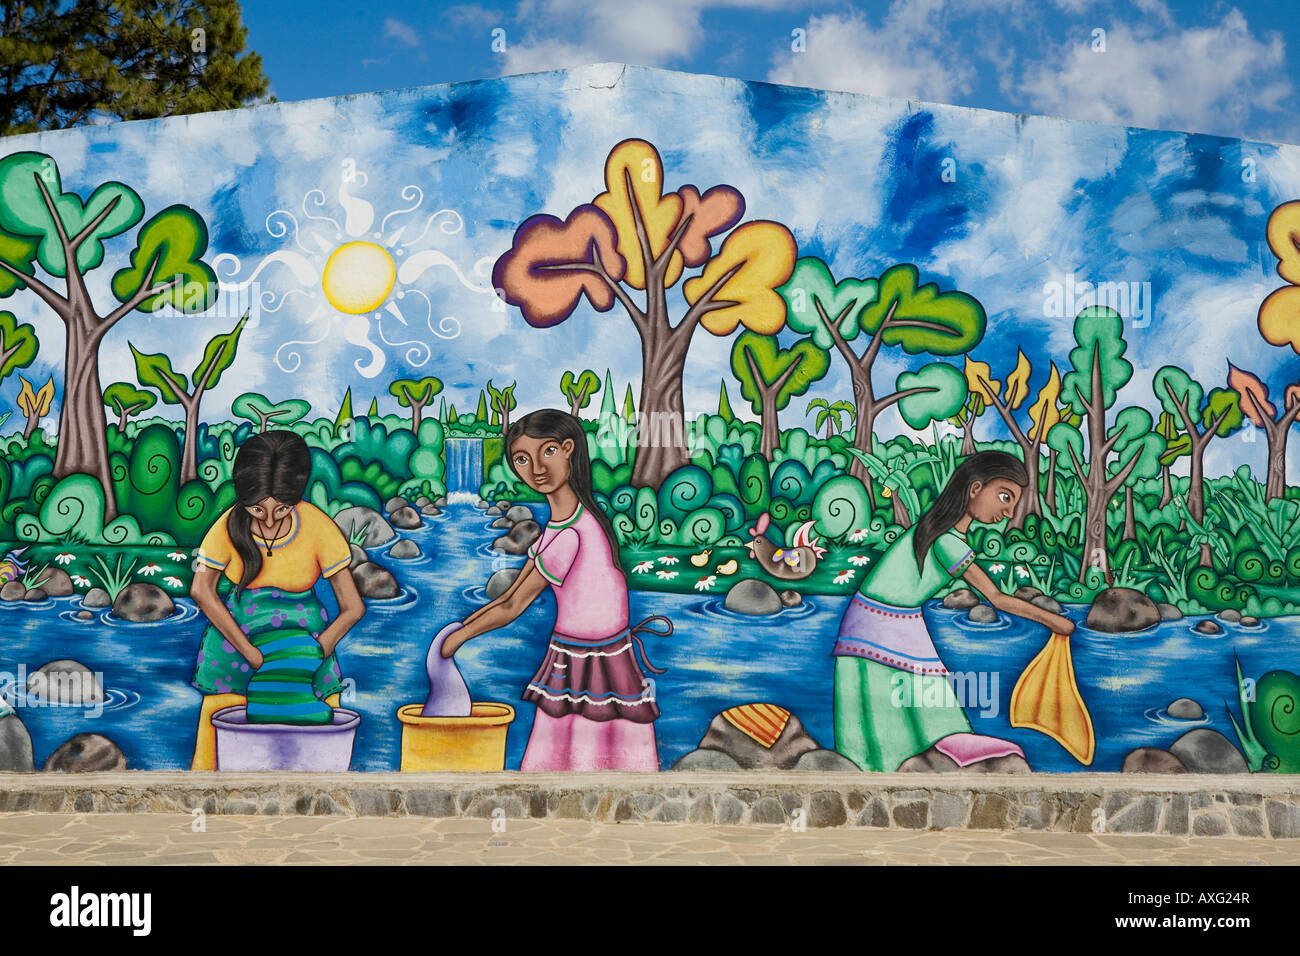 Une peinture murale représentant les femmes lessive Concepcion de Ataco El Salvador Banque D'Images